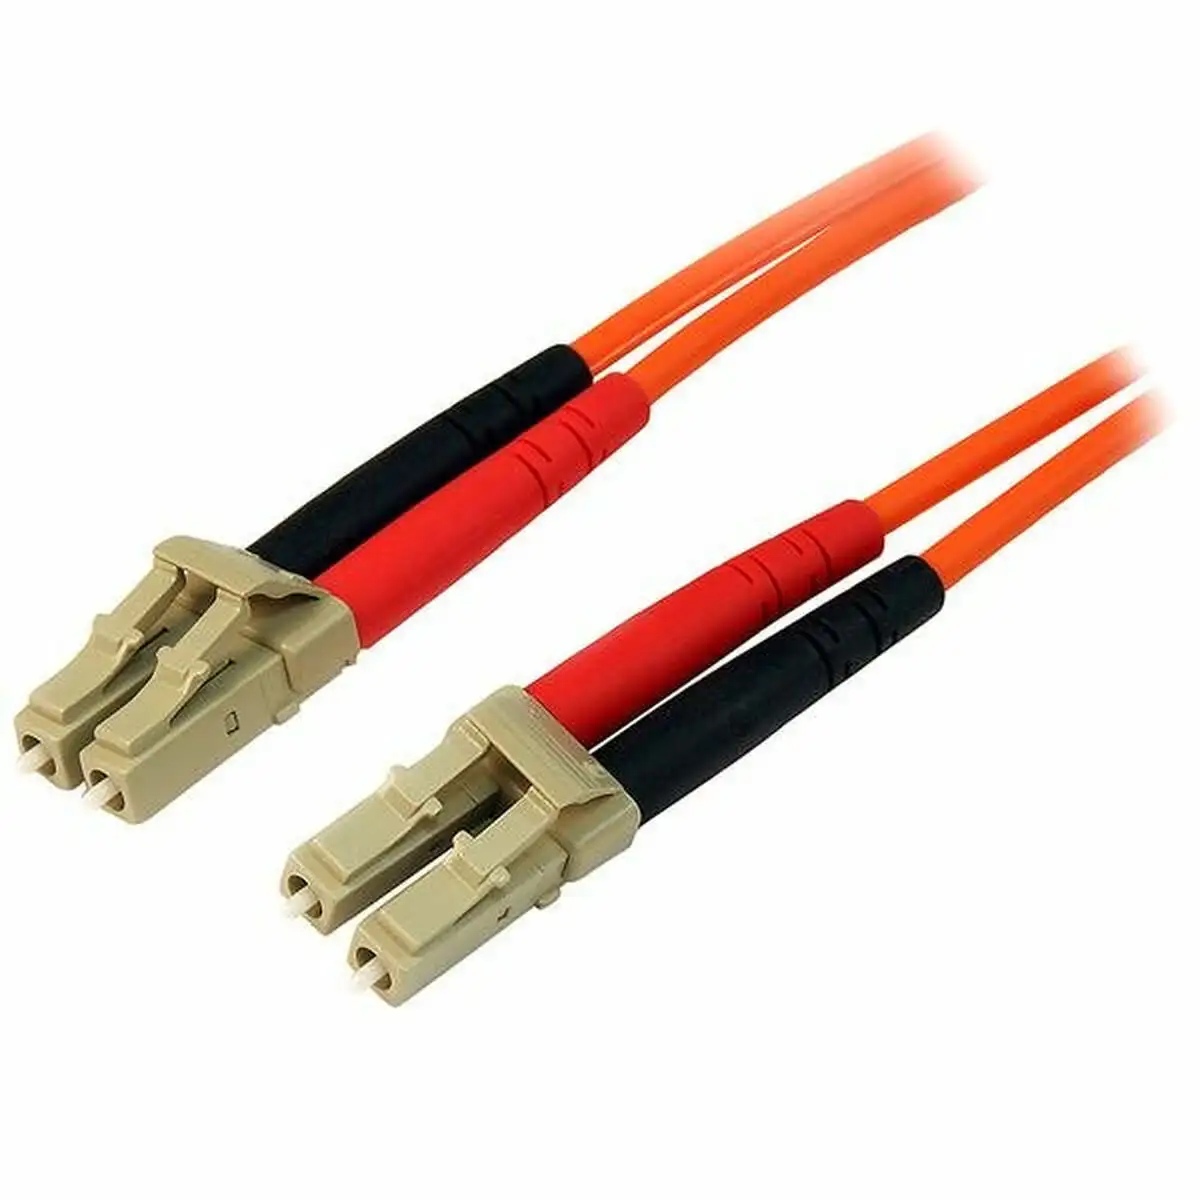 Cable a fibre optique startech 50fiblclc3 3 m_3975. DIAYTAR SENEGAL - Là où la Beauté Rencontre la Fonctionnalité. Parcourez notre sélection pour trouver des produits qui allient esthétique et praticité, pour un quotidien sublimé.